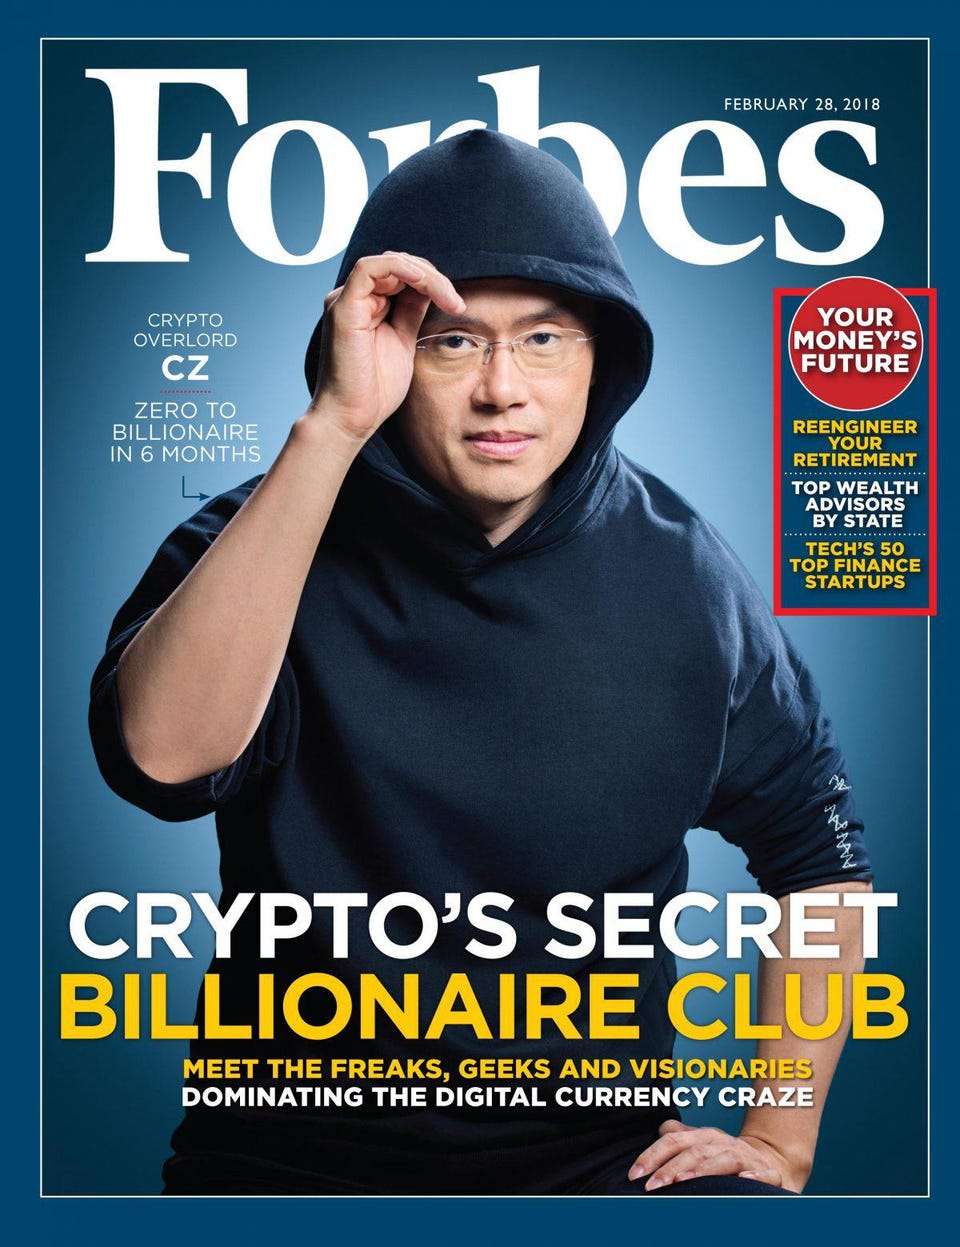 En février 2018, Chanpeng Zhao a les honneurs de la couverture de Forbes avec cette accroche : parti de zéro, il devient milliardaire en six mois ! © Forbes